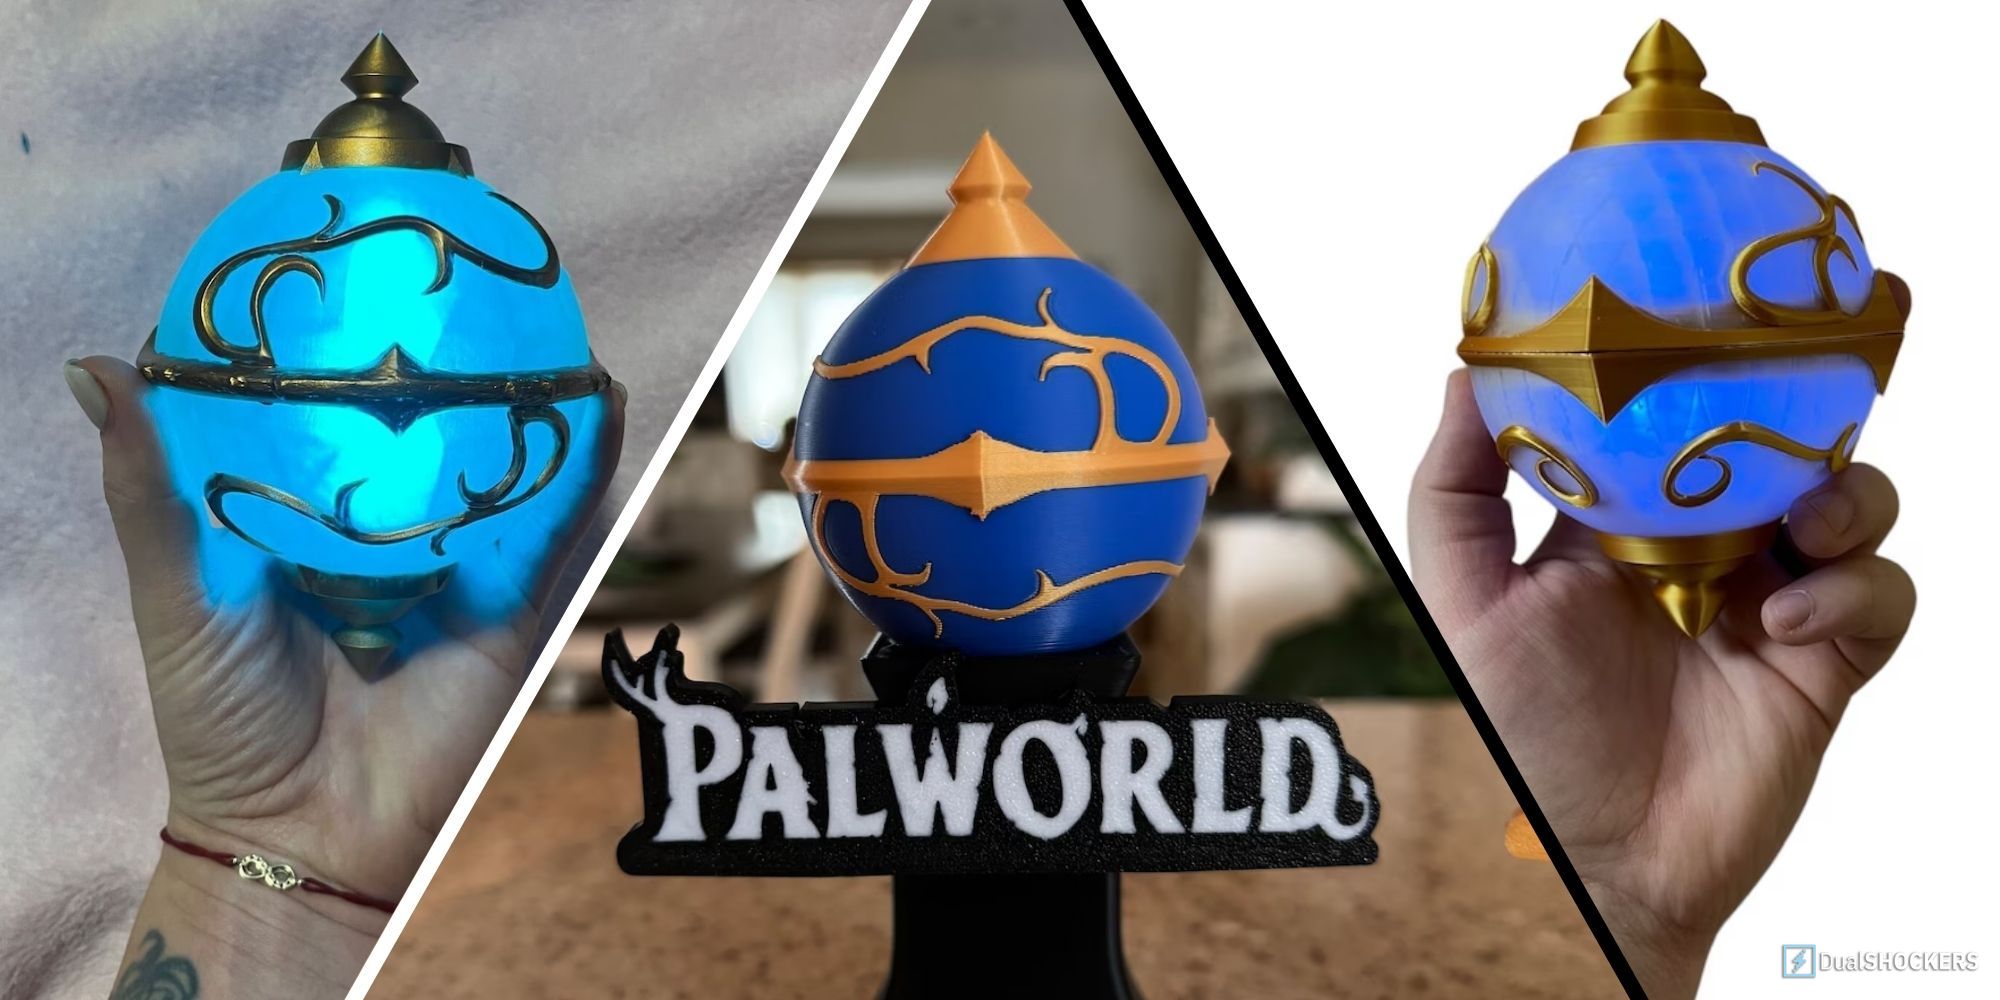 Imagem dividida com três réplicas do Pal Sphere da Palworld em um estande e na mão do vendedor.